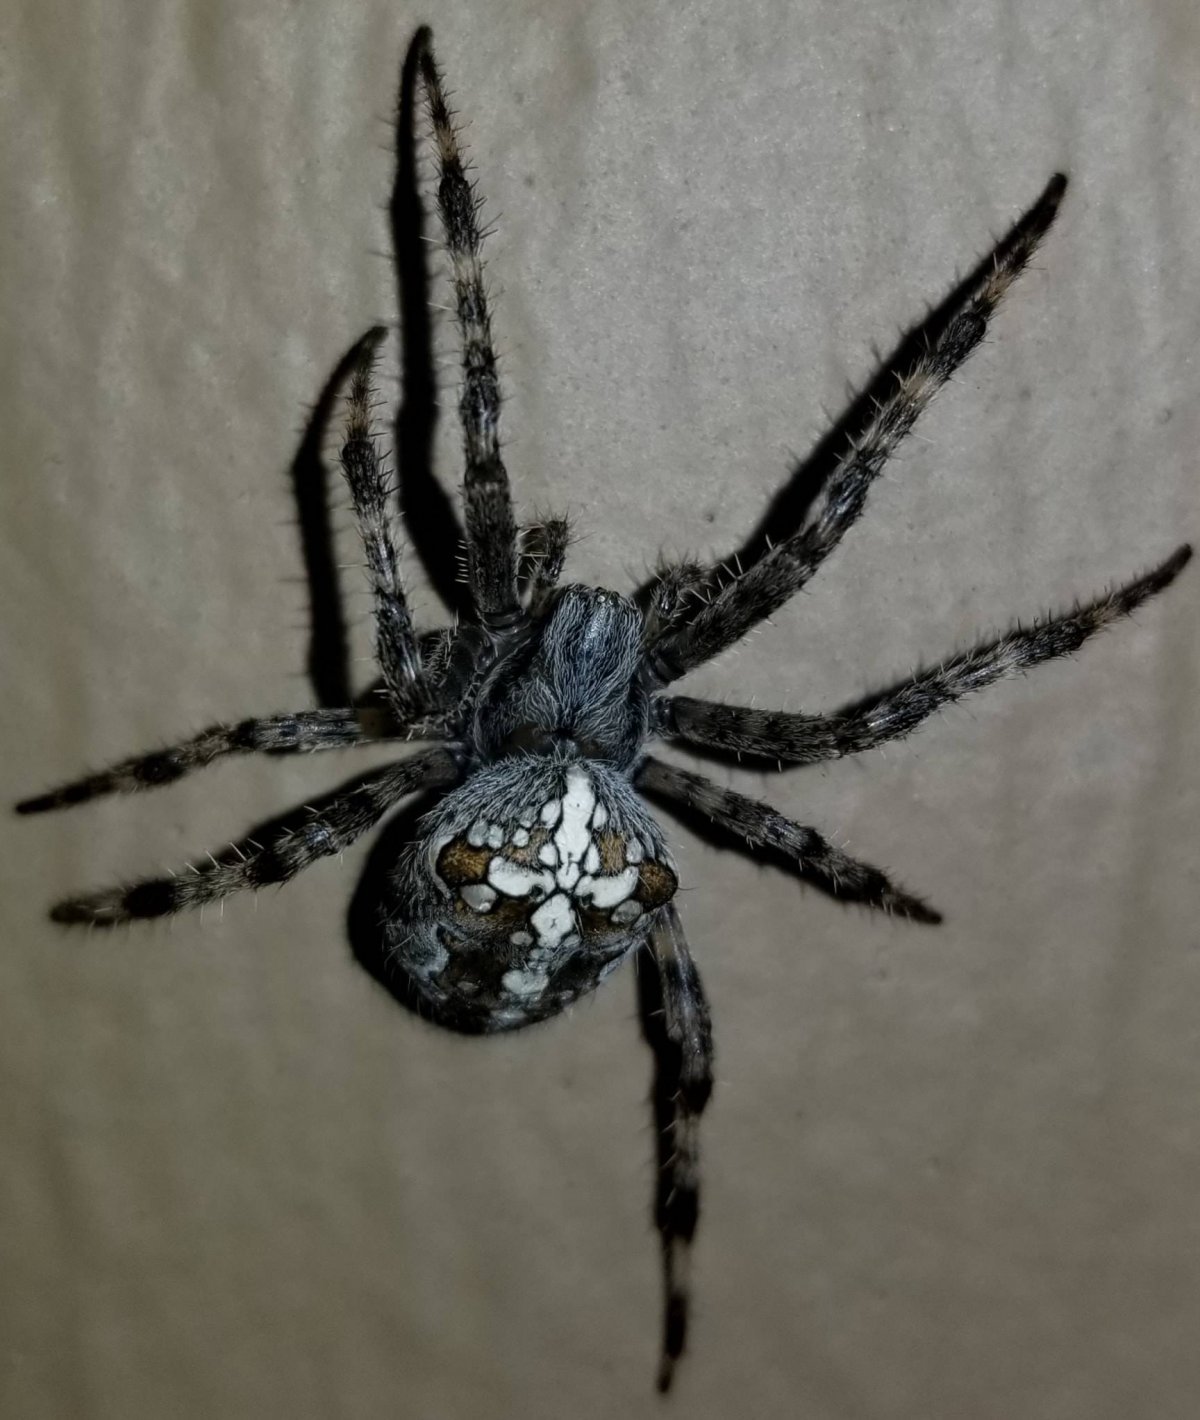 Черный паук с рисунком на брюшке